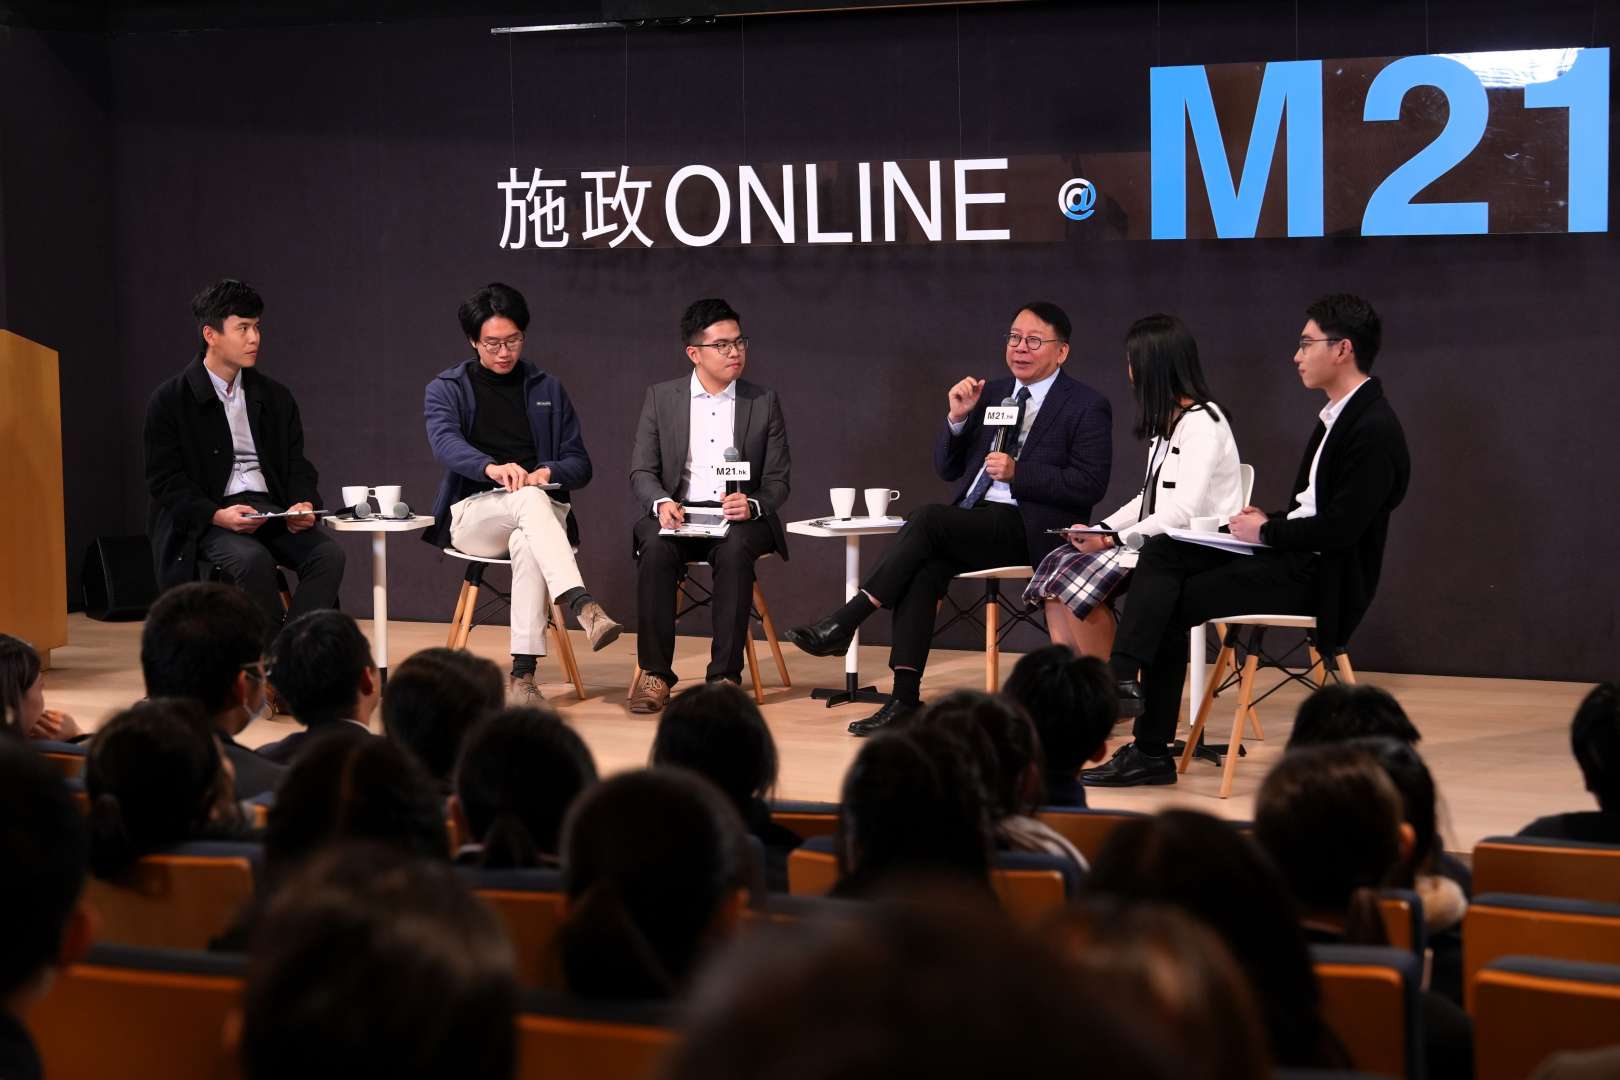 《施政ONLINE@M21》青年與陳國基司長對談